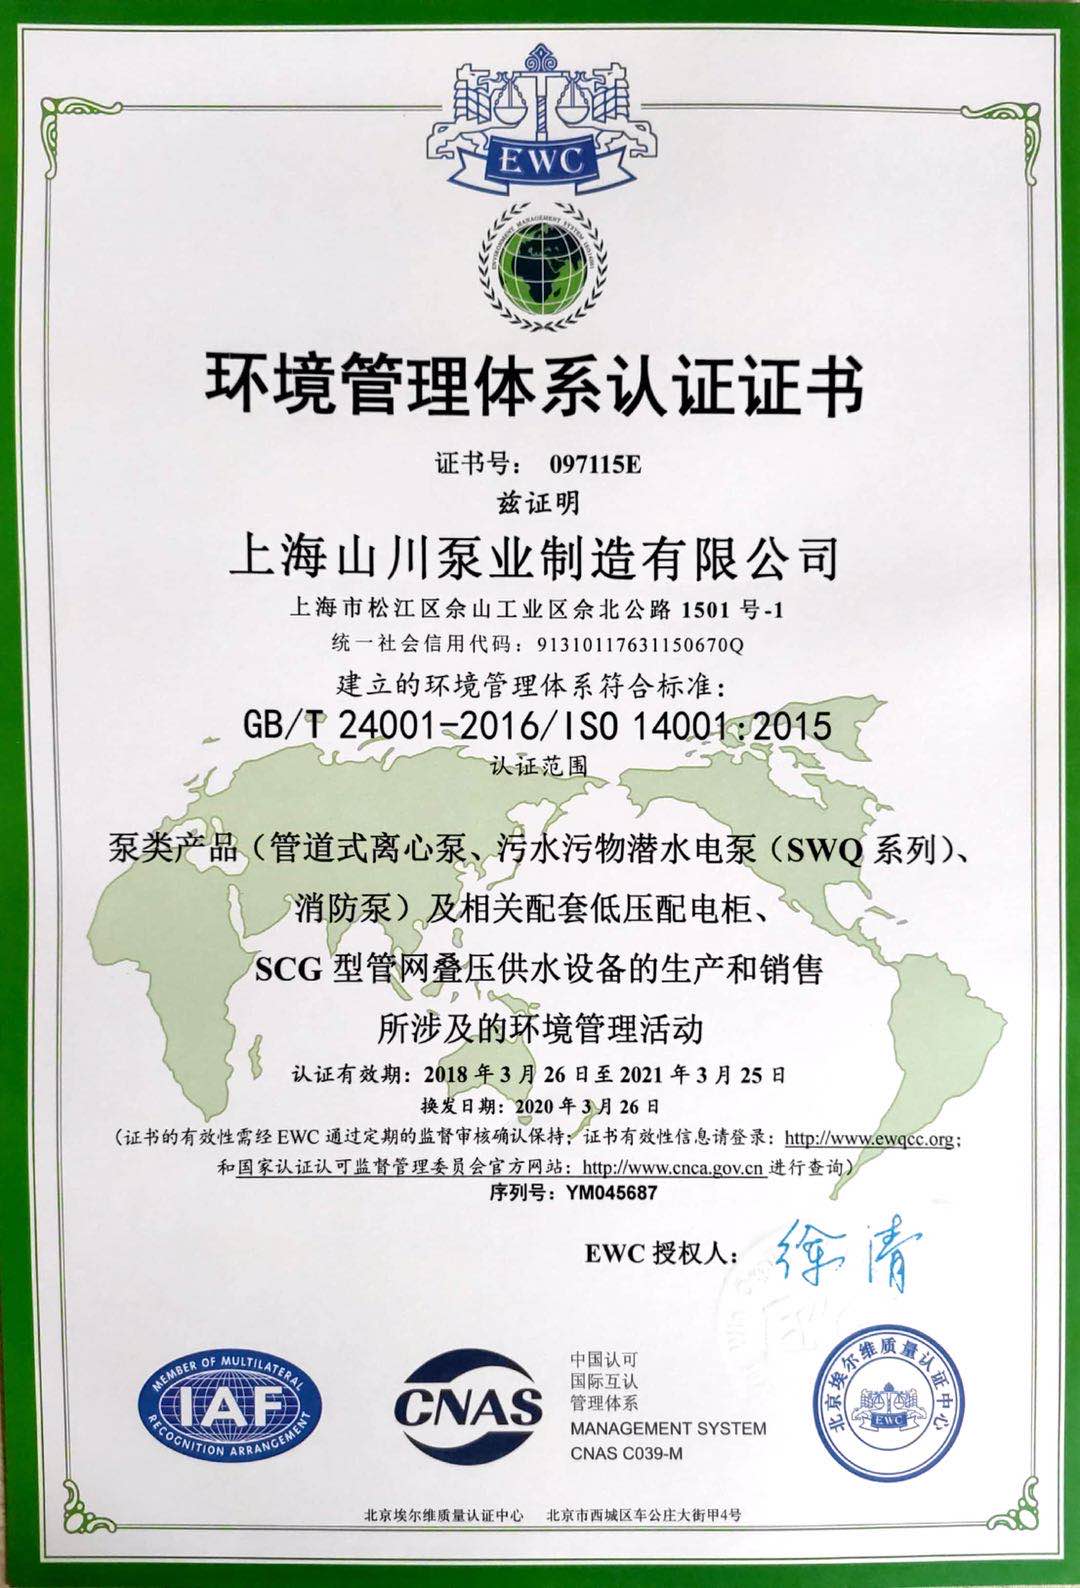 上海山川泵业制造有限公司 环境管理体系认证证书